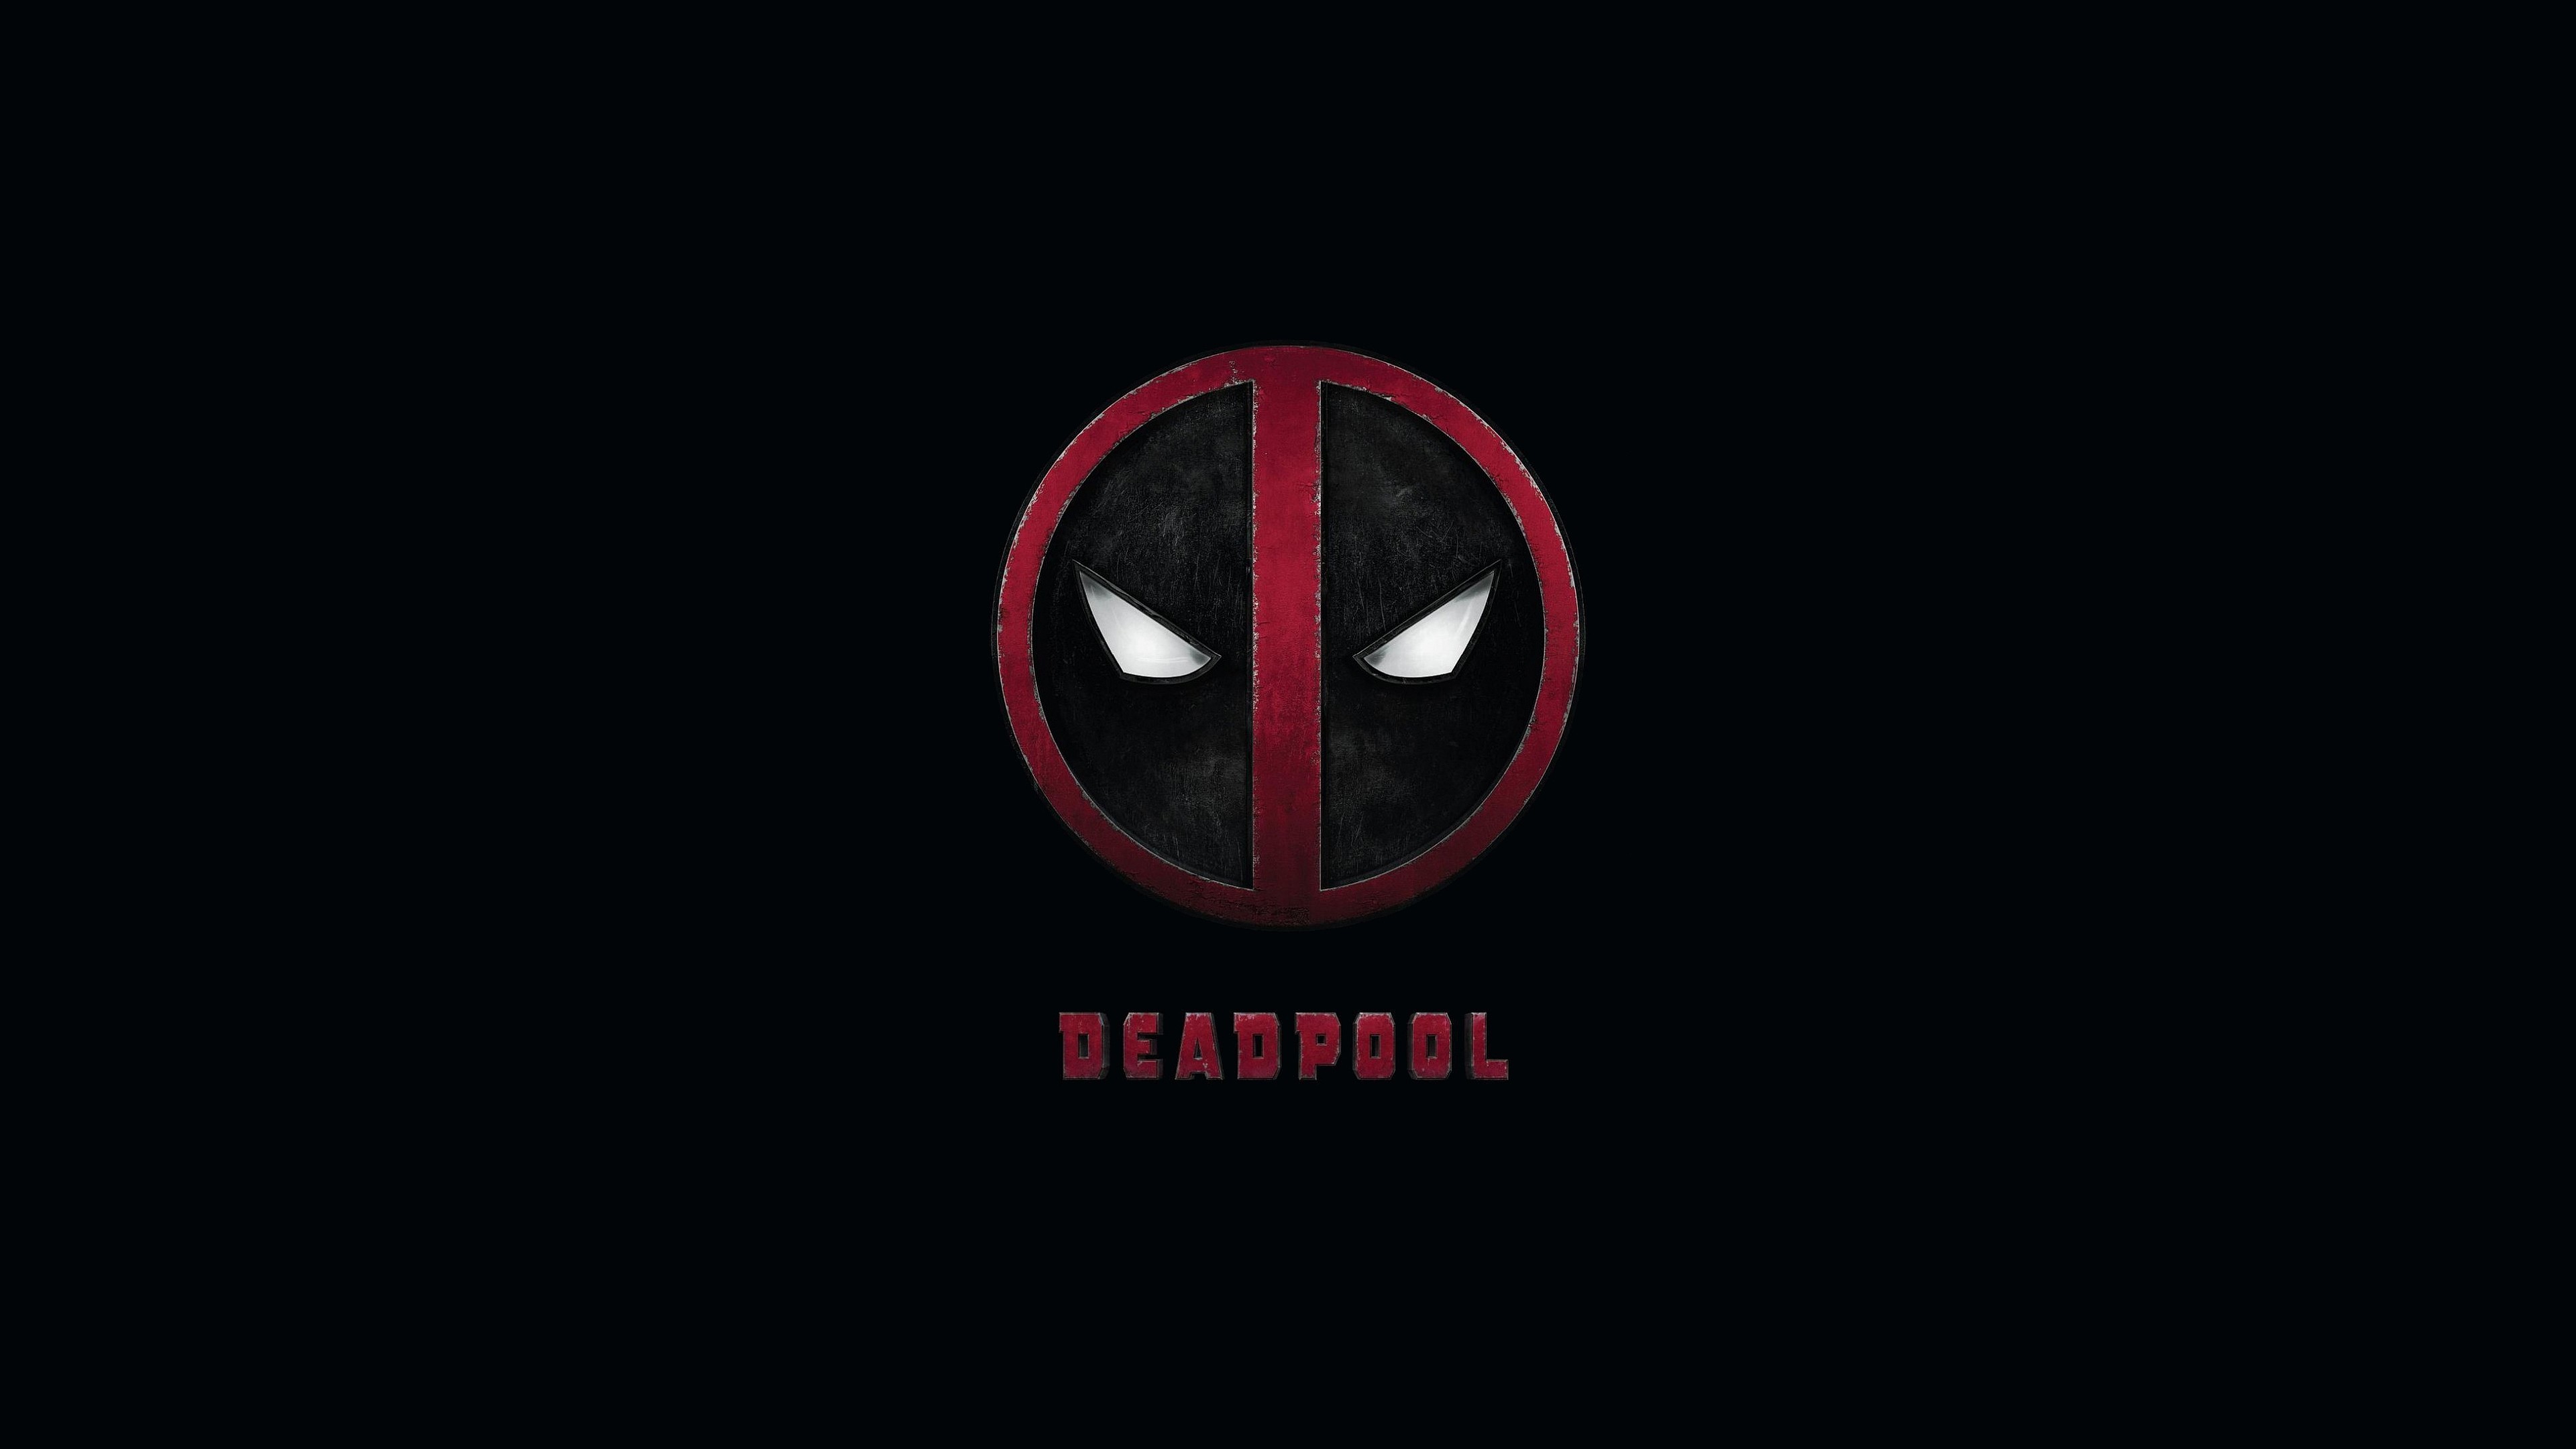 3840x2160 Marvel Deadpool Movie wallpaper | Desktop Wallpapers | Pinterest | Marvel  deadpool movie, Deadpool movie wallpaper and Deadpool movie